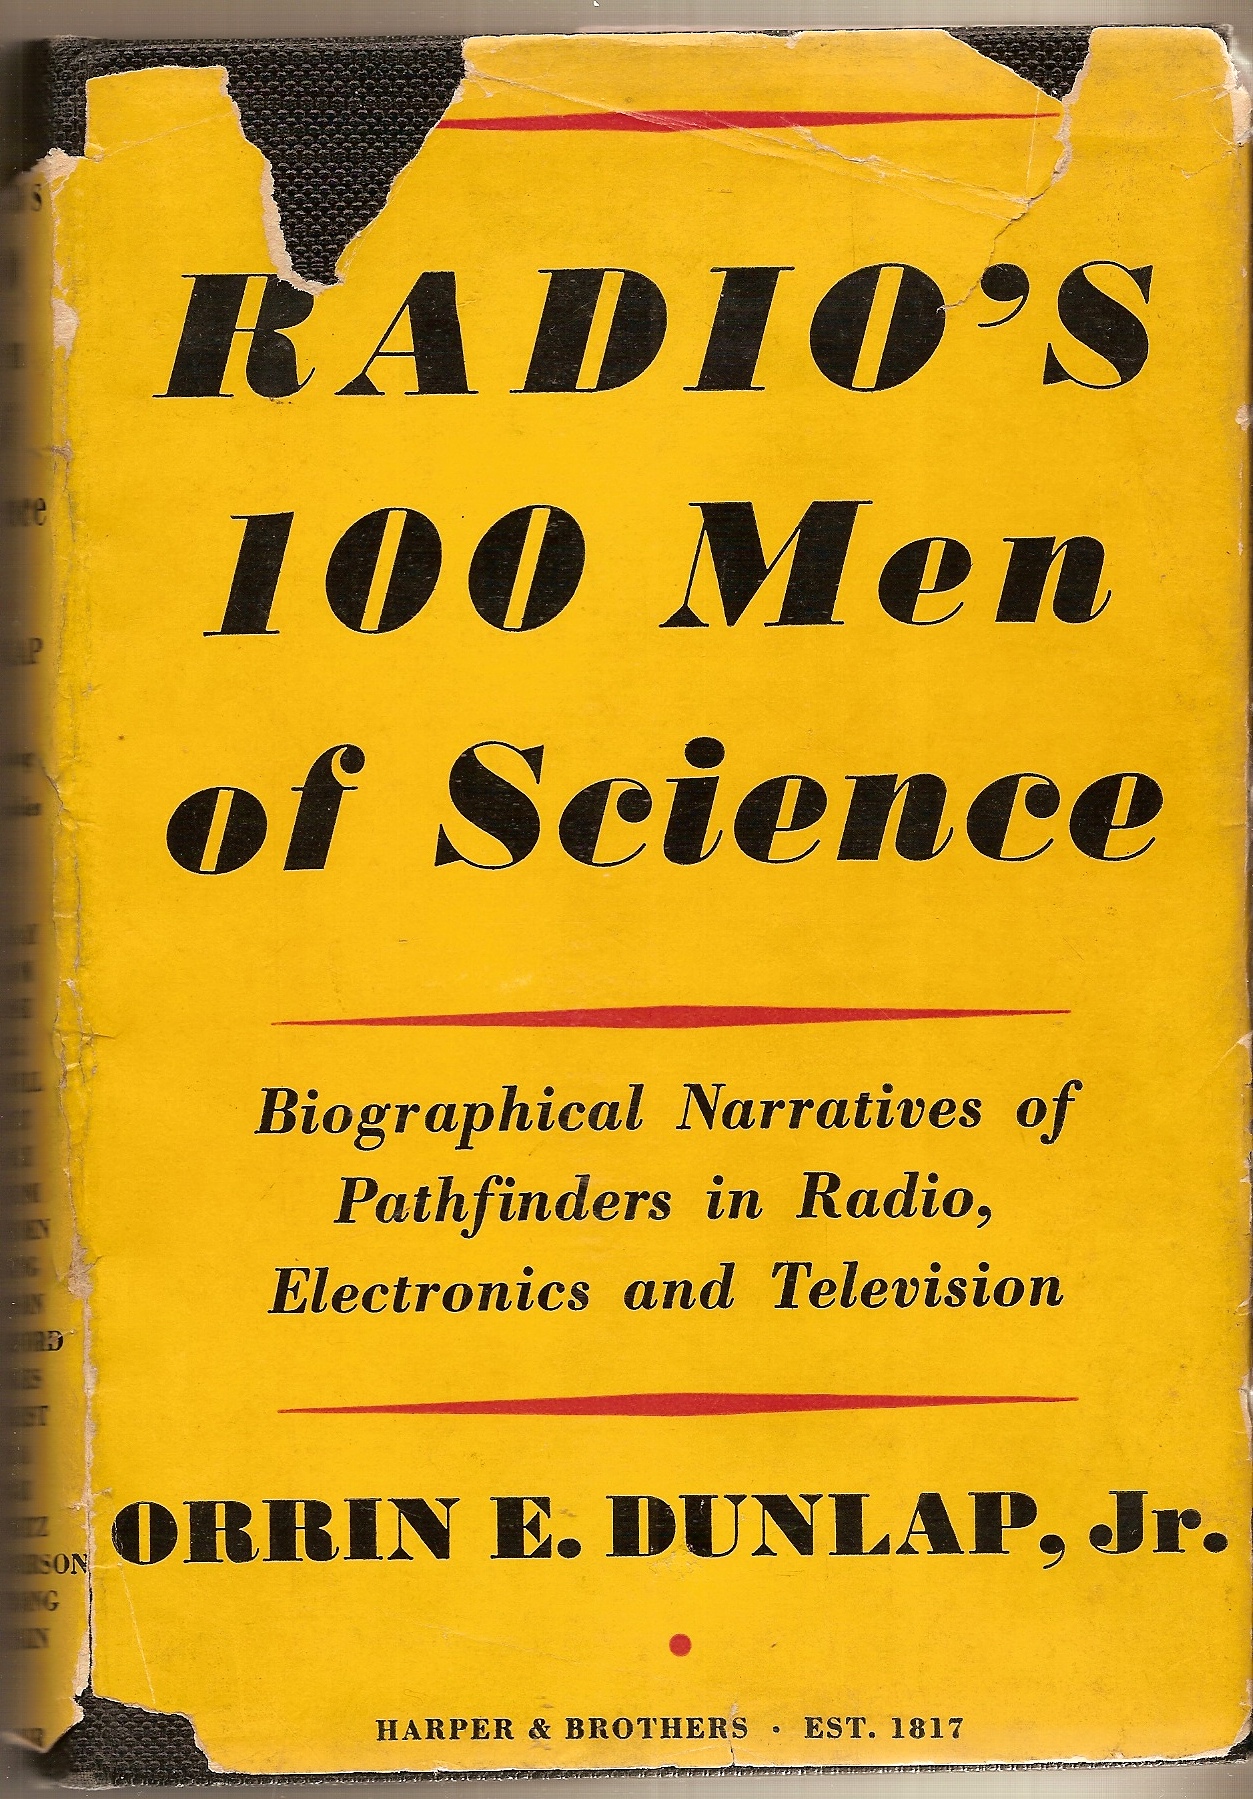 DUNLAP, ORRIN ELMER, ** SIGNED** - Radio's One Hundred Men of Science